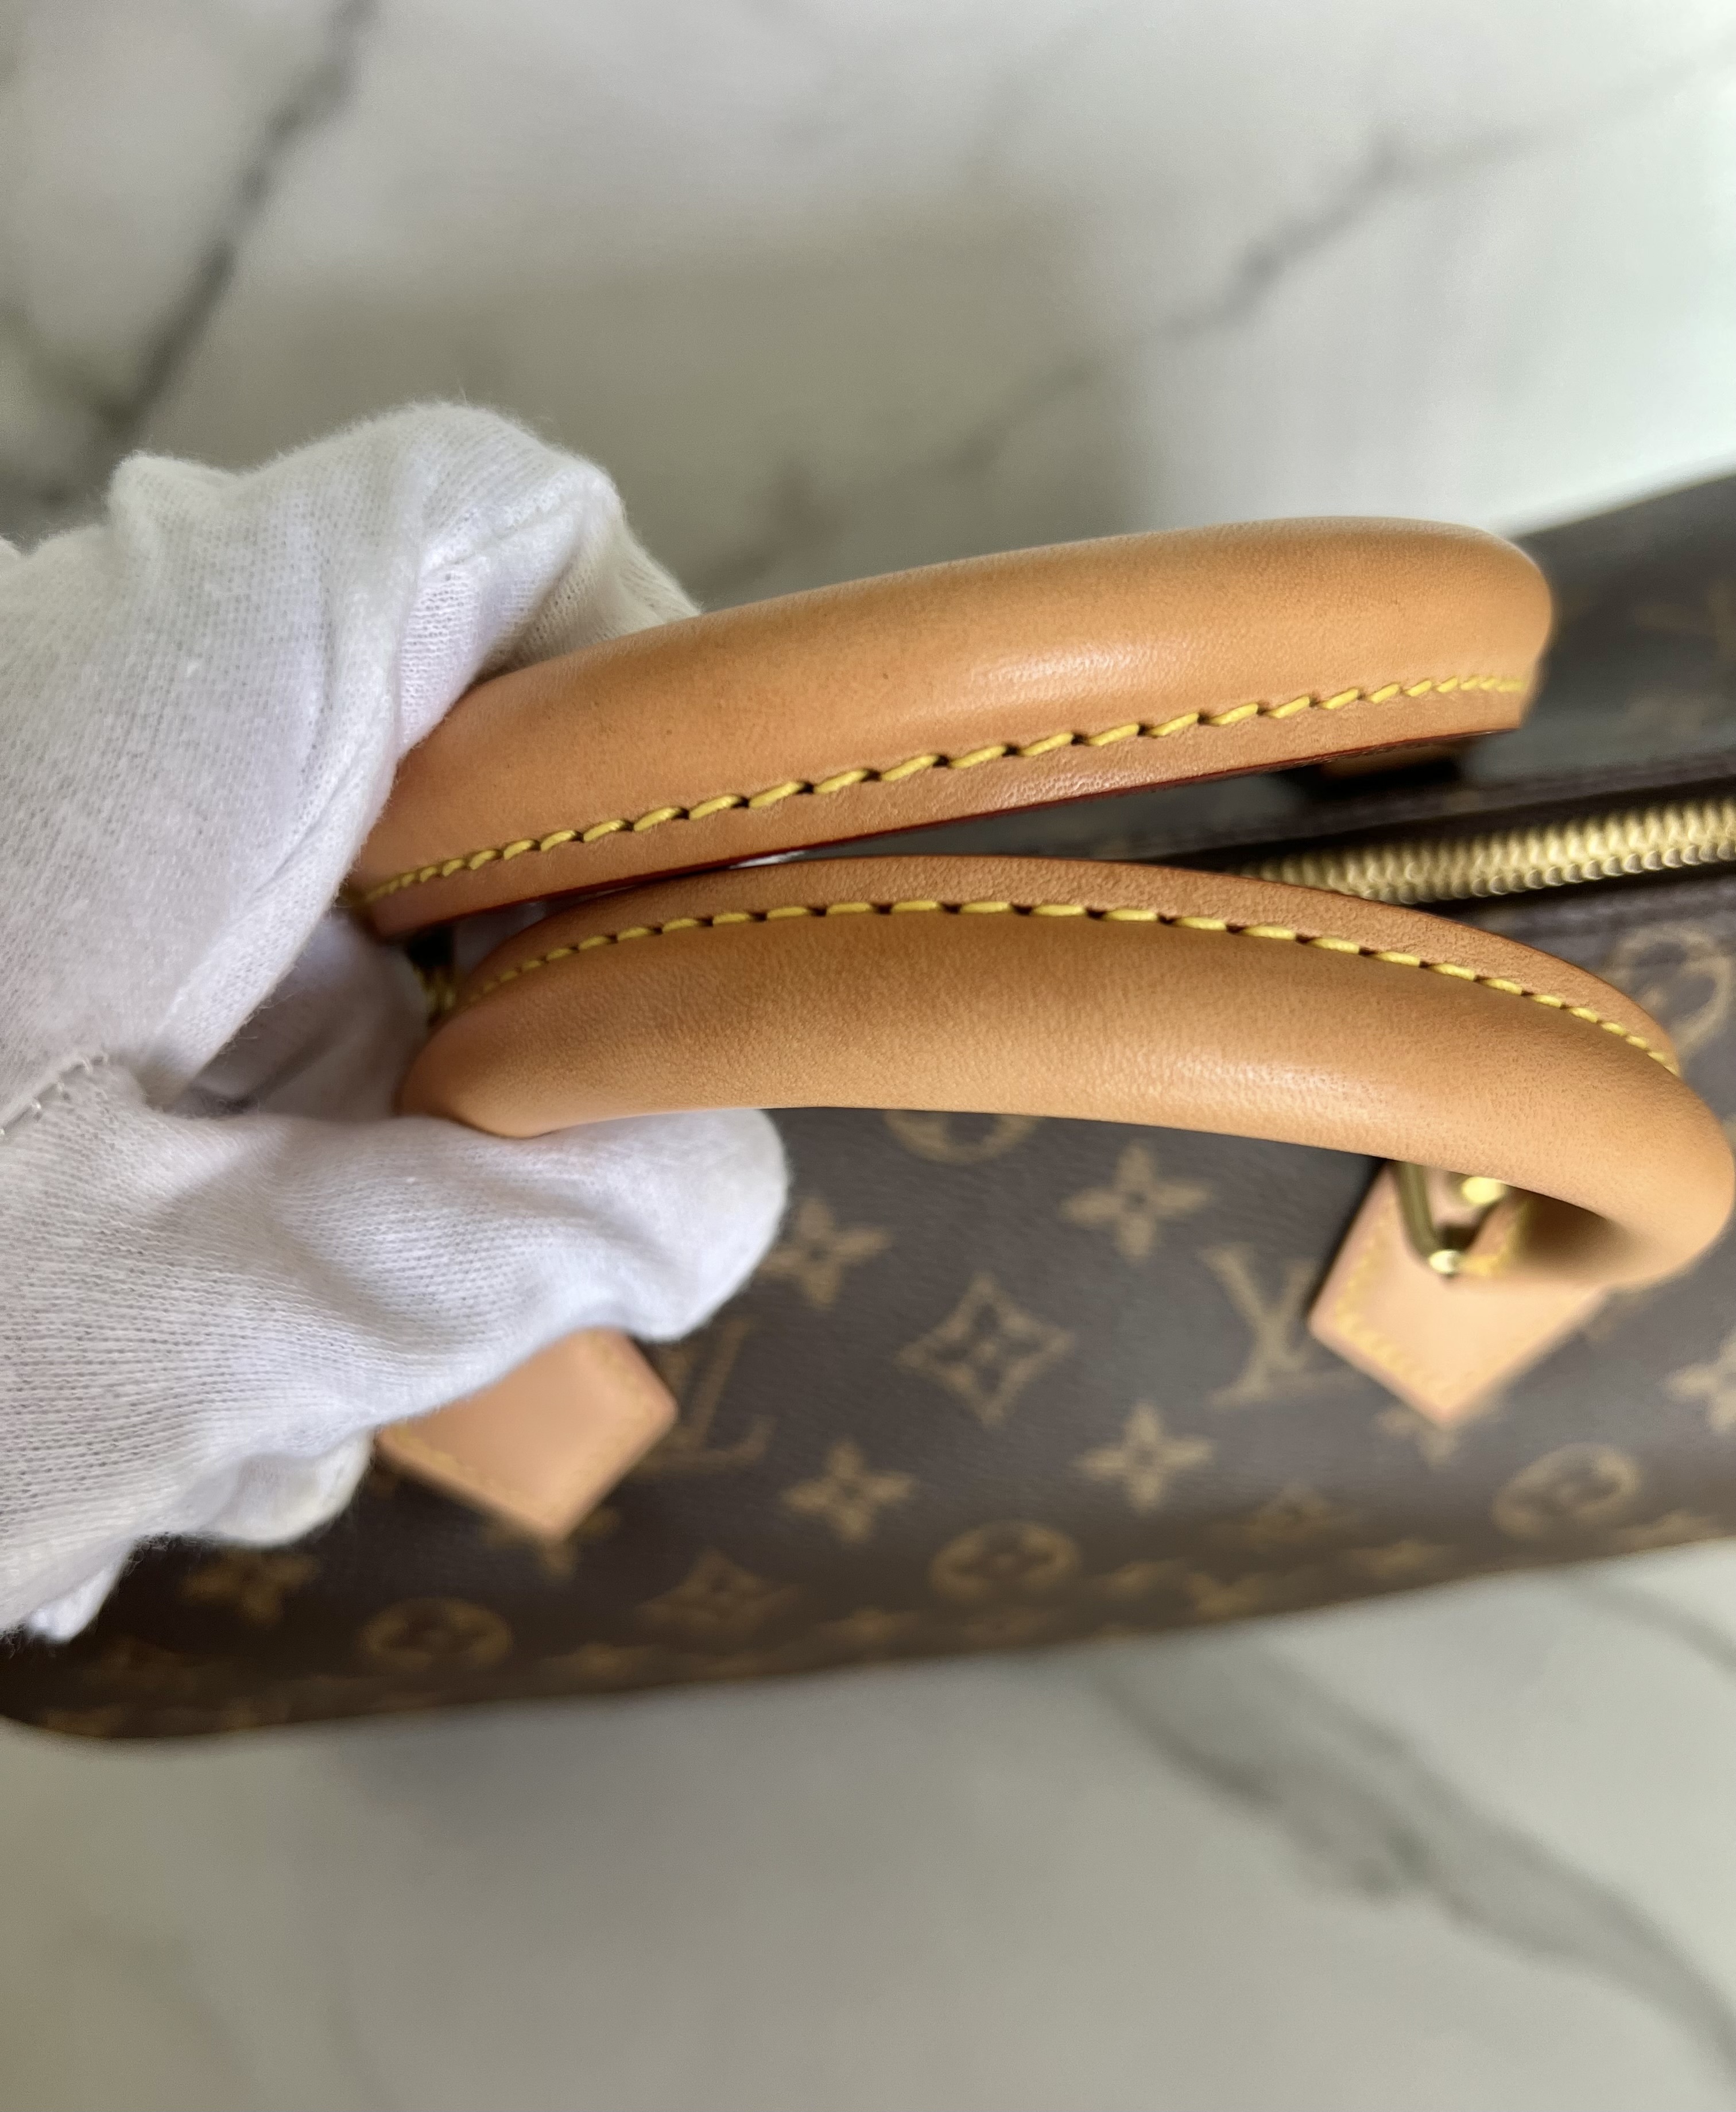 Louis Vuitton Speedy monogram 30 Brown ref.566918 - Joli Closet